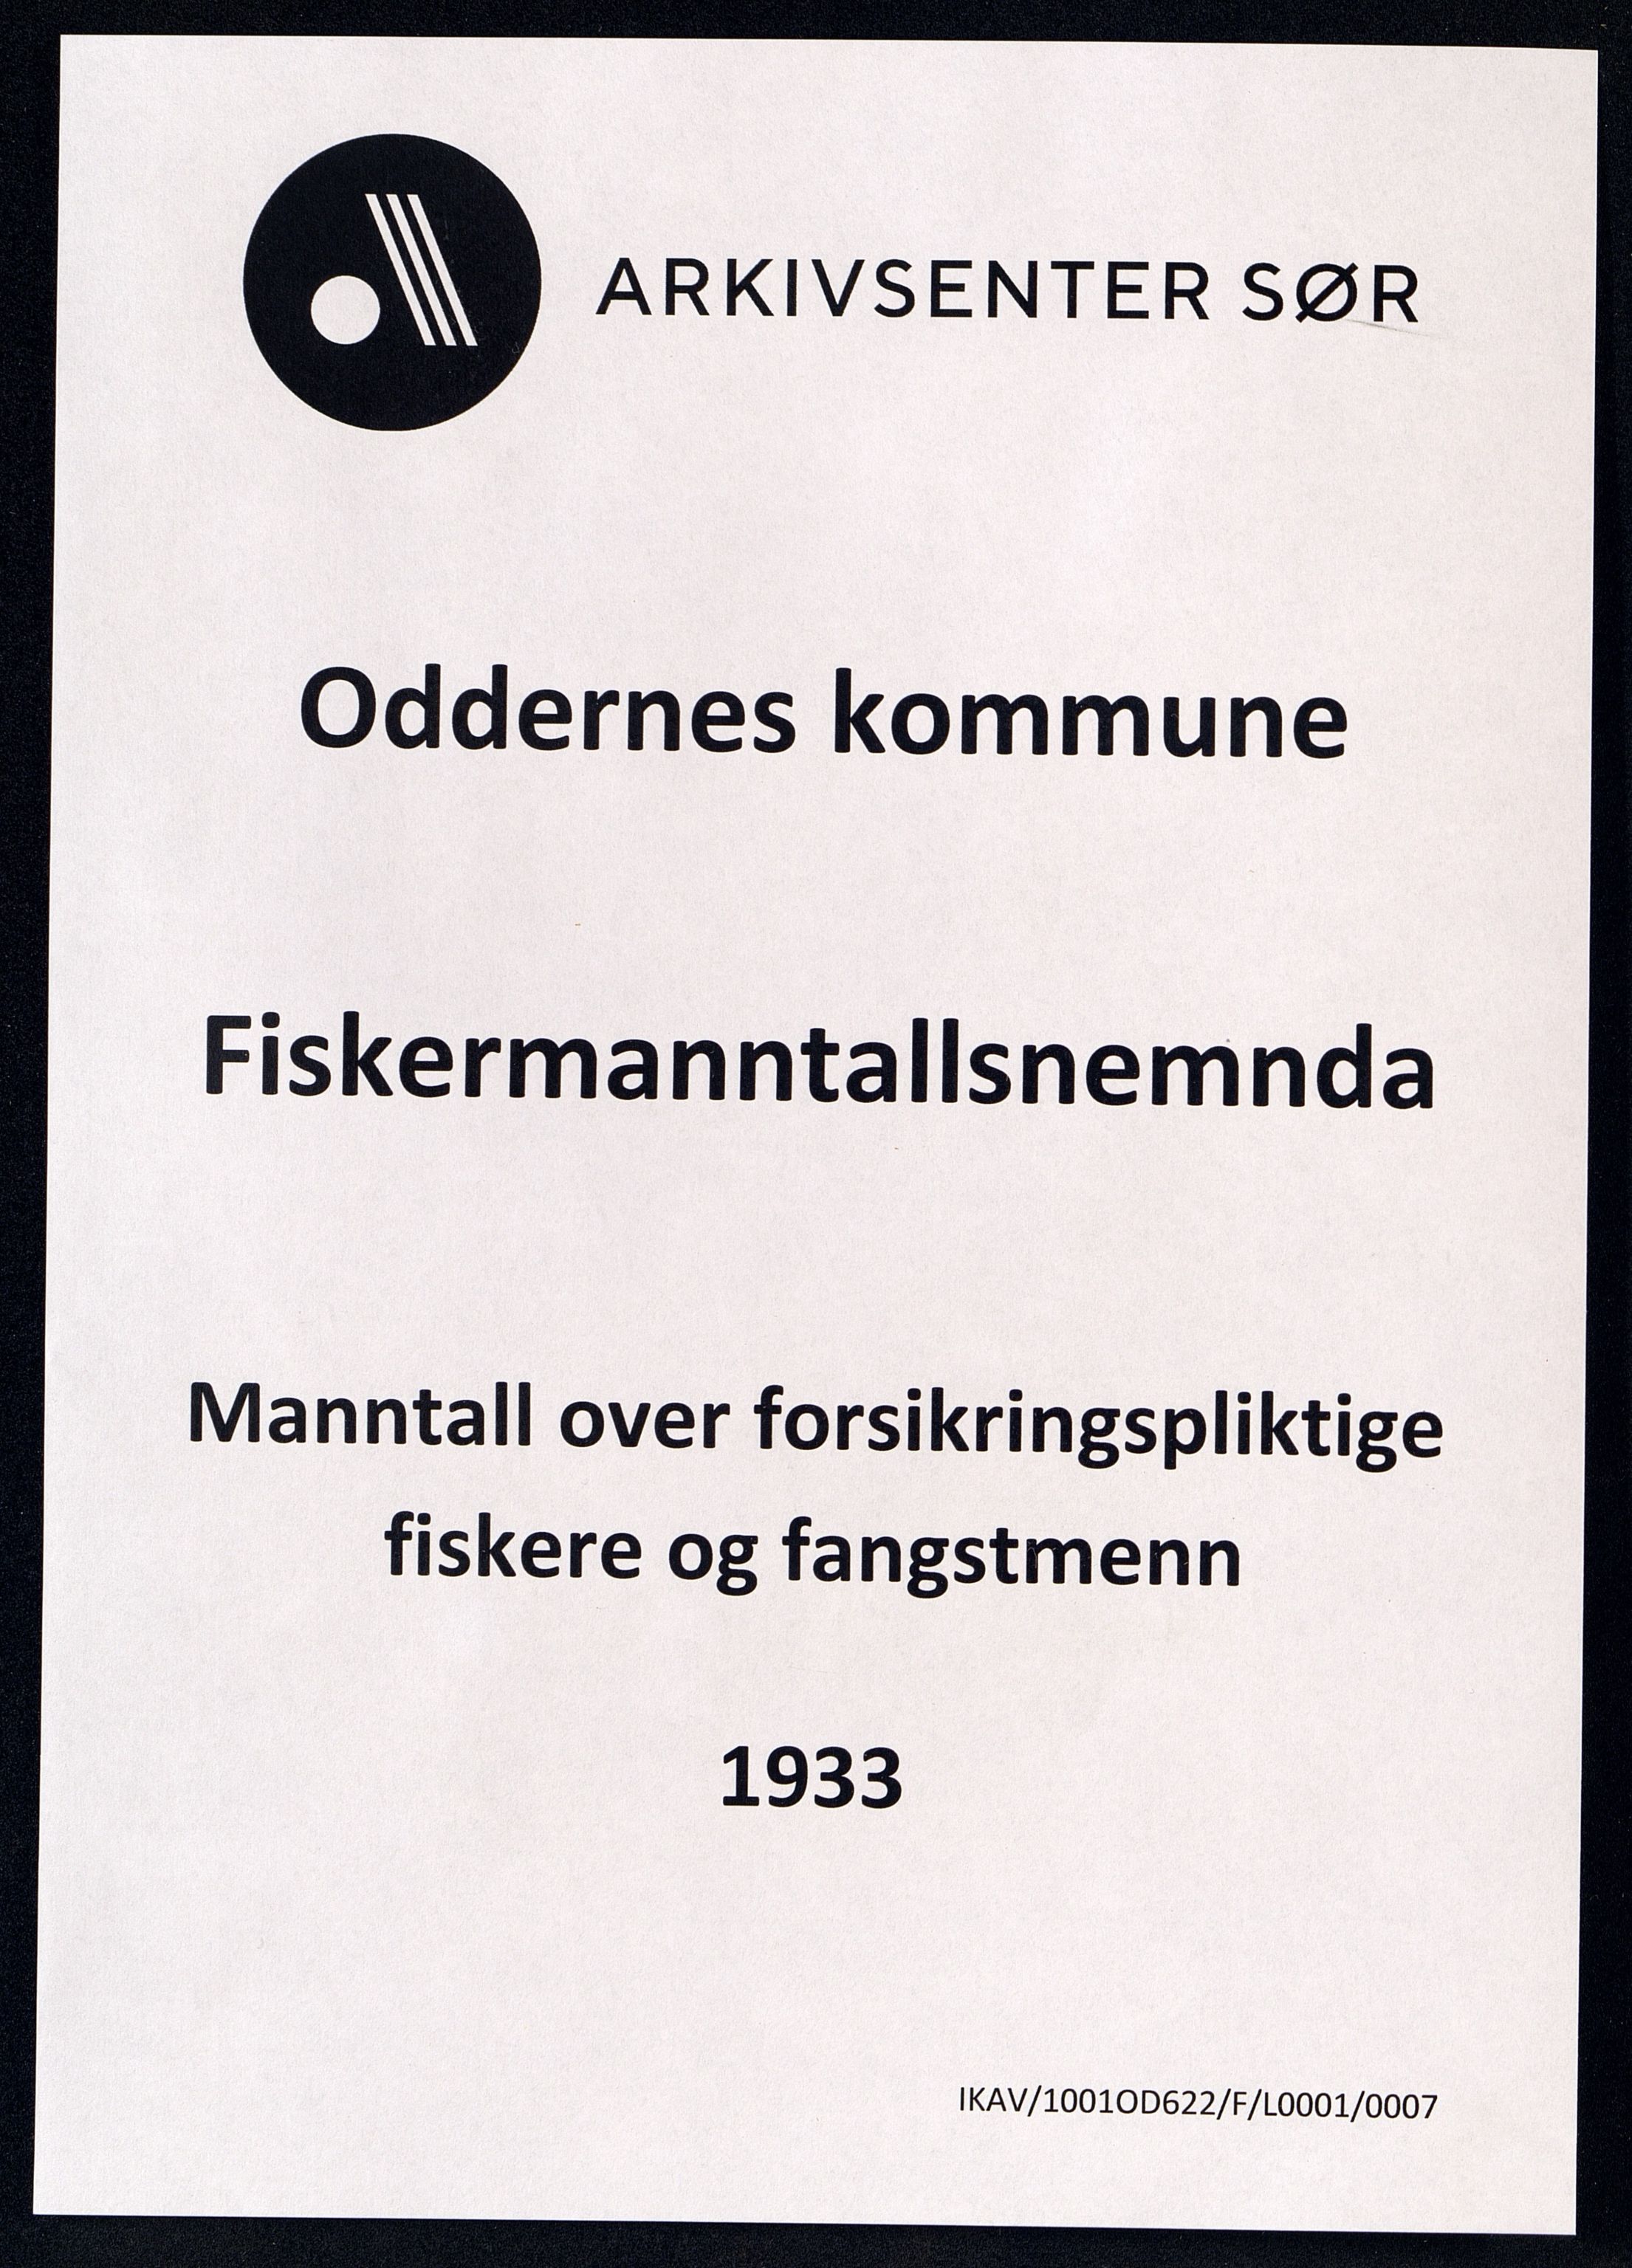 Oddernes kommune - Fiskermanntallnemnda, IKAV/1001OD622/F/L0001/0007: Manntall over forsikringspliktige fiskere og fangstmenn / Manntall over forsikringspliktige fiskere og fangstmenn, 1933